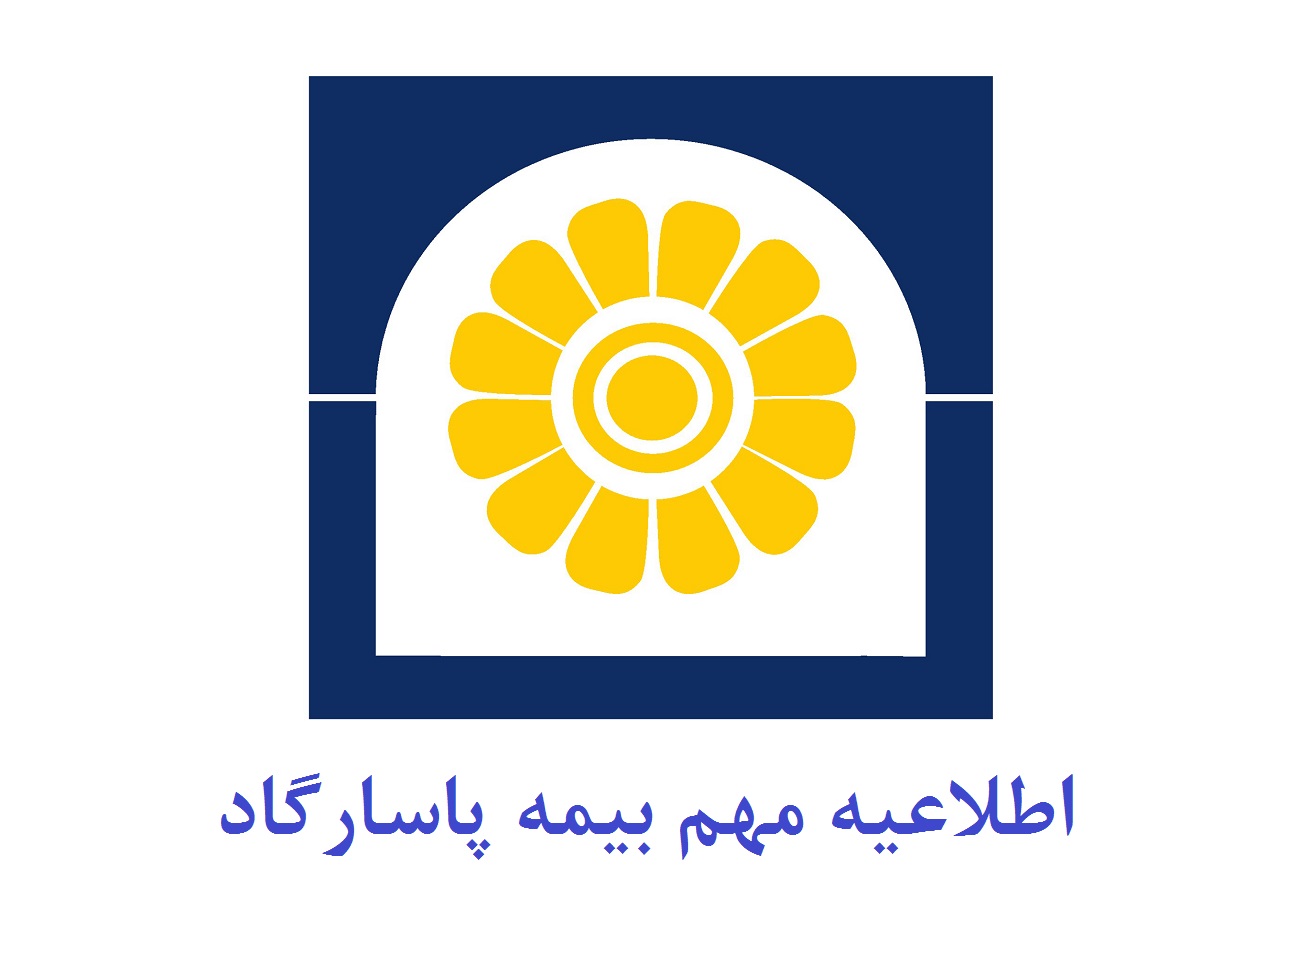 جزئیات ارائه خدمات بیمه پاسارگاد در تعطیلی یک هفته ای تهران و البرز